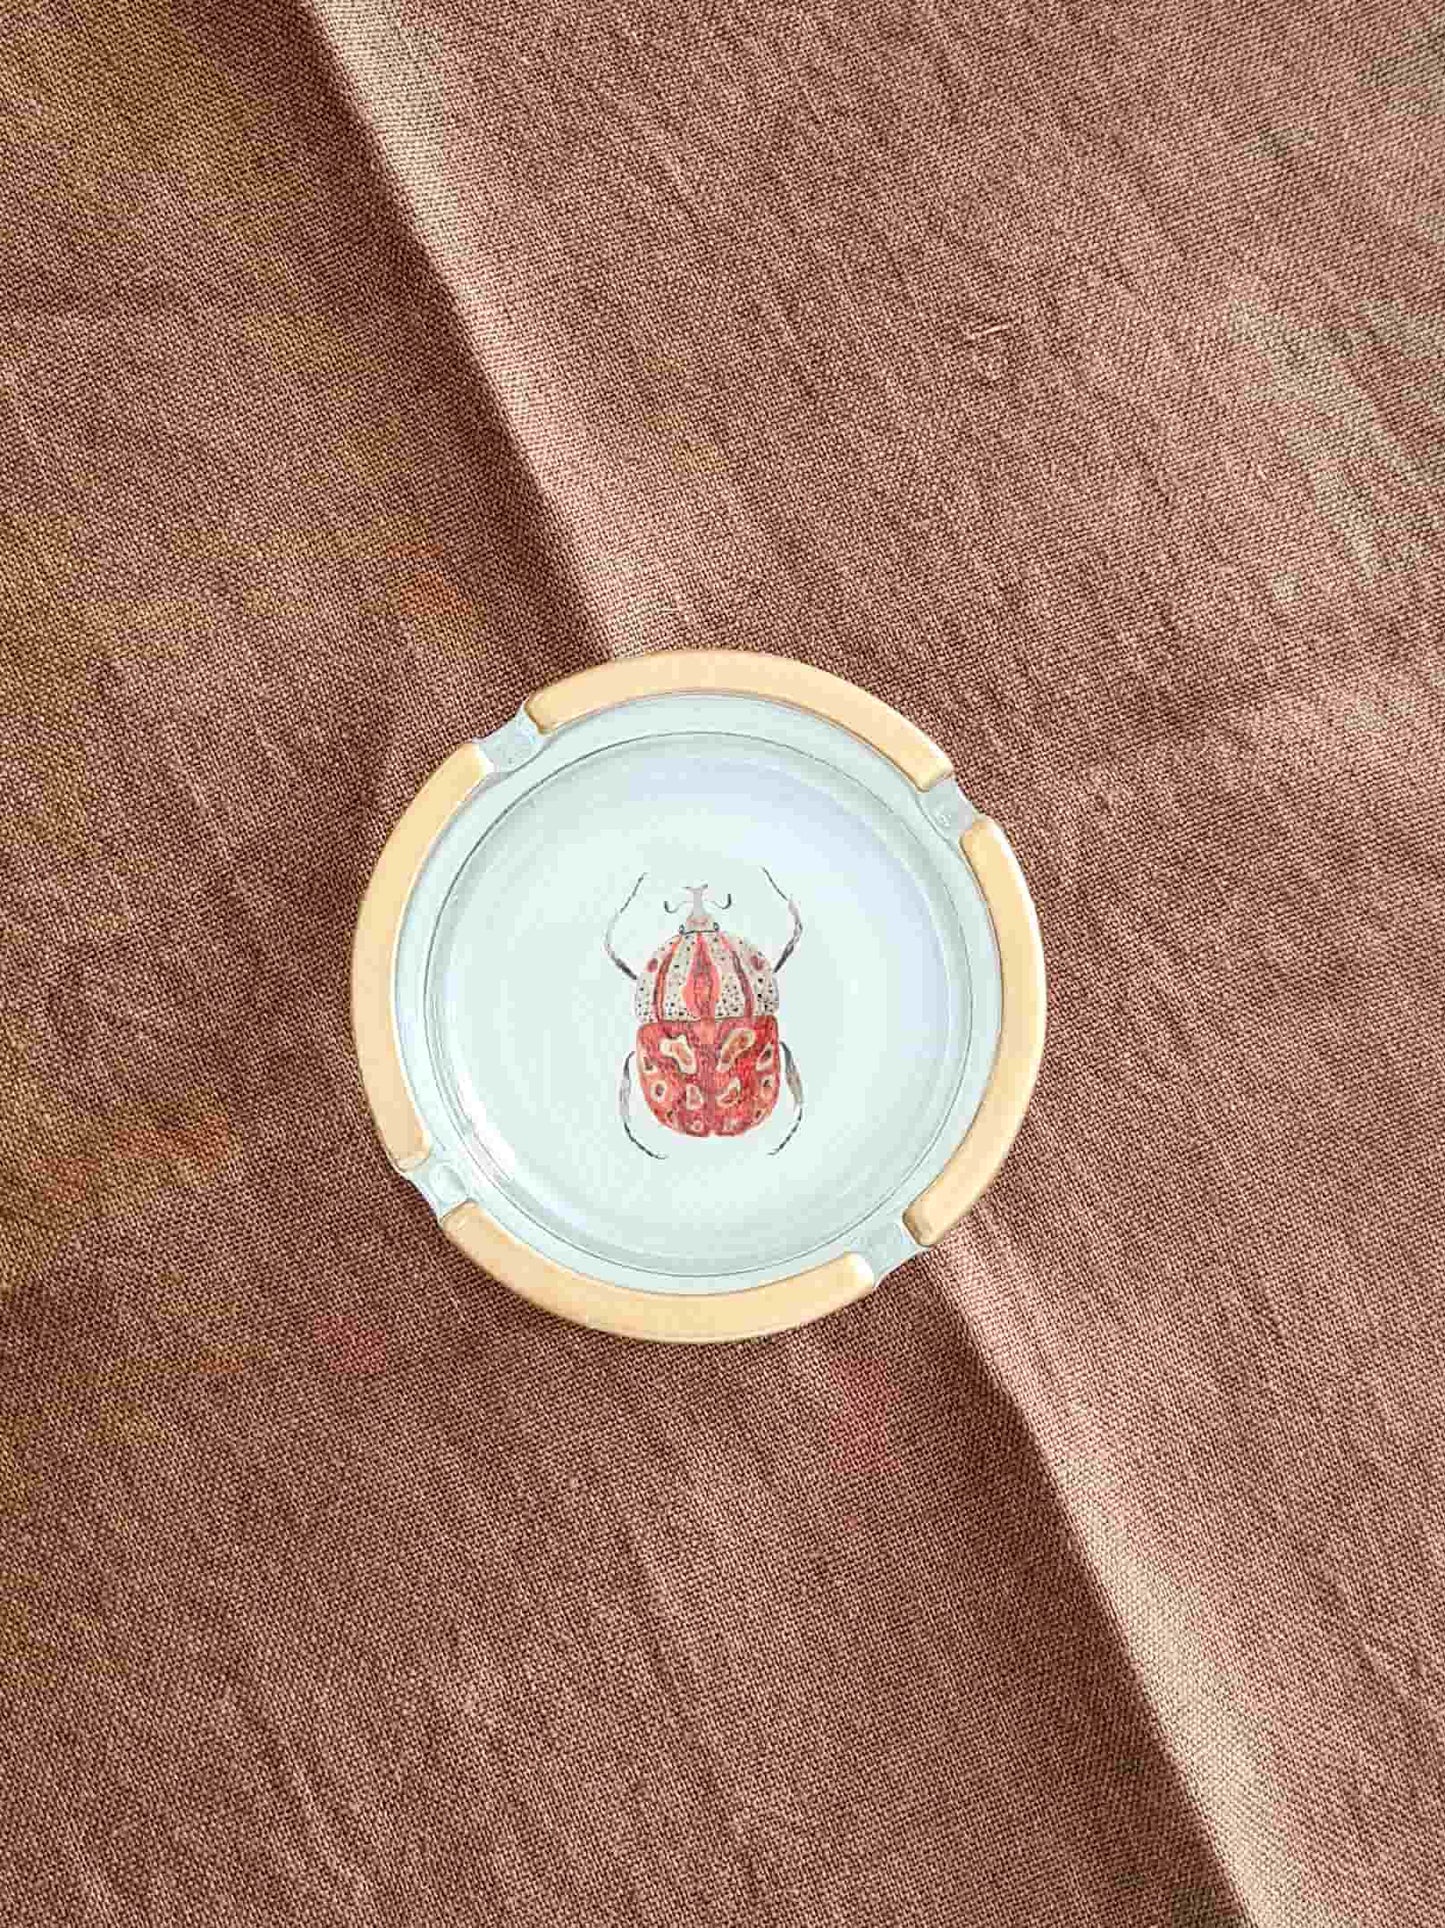 Cenicero chico Escarabajo rojo